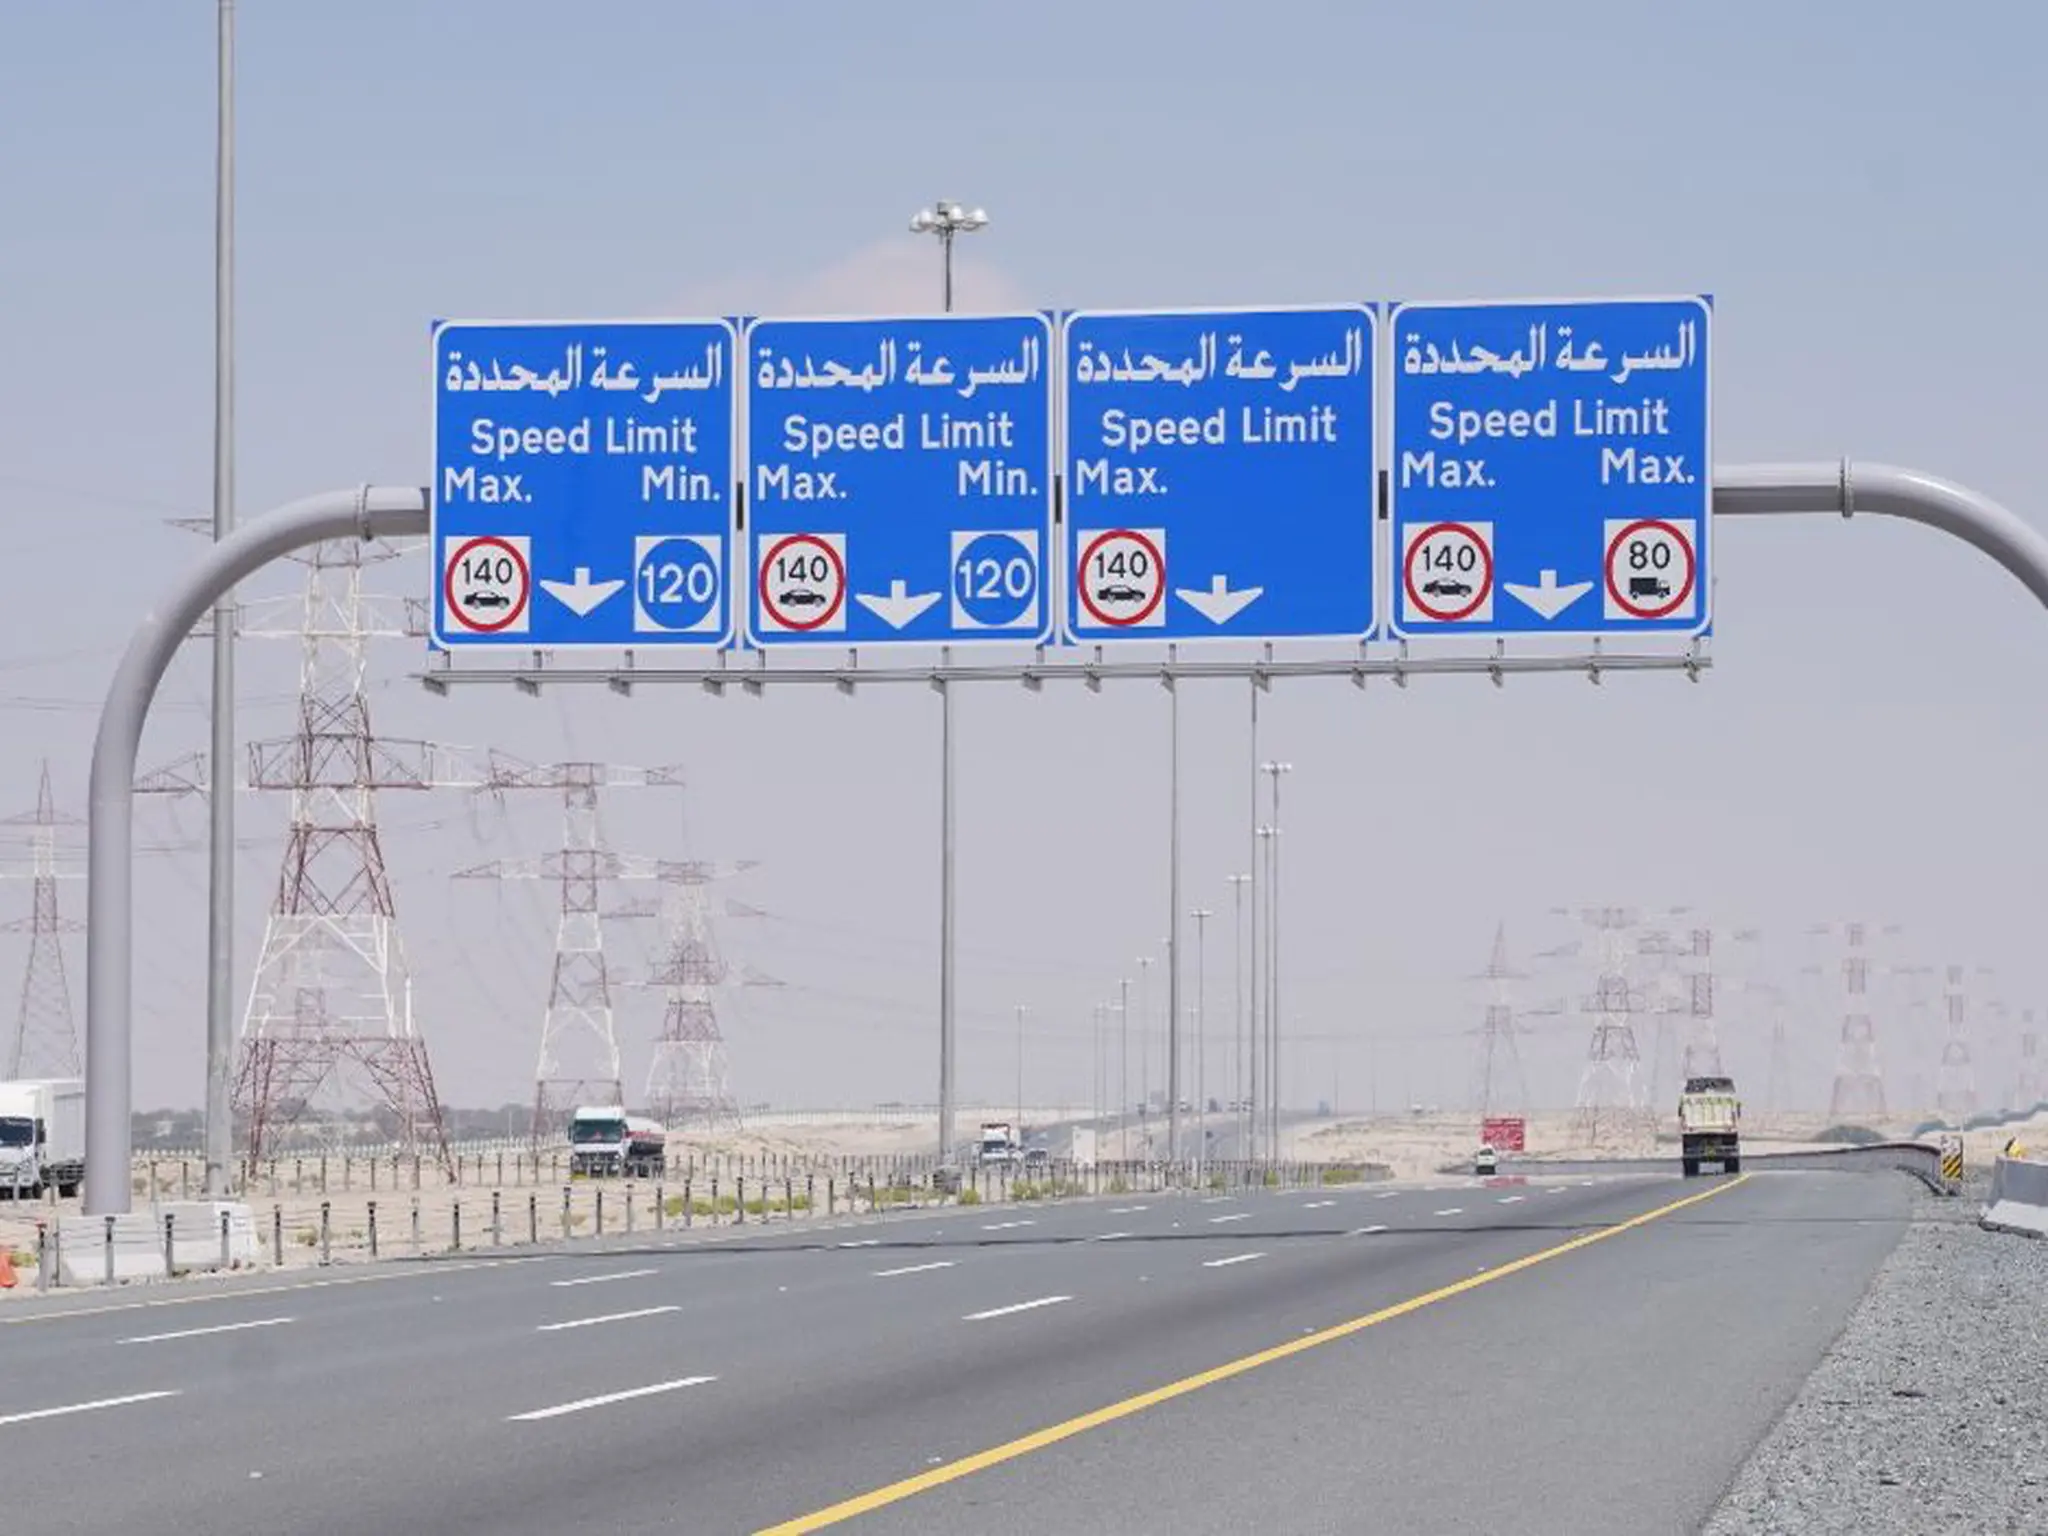 warnings to drivers coming to Abu Dhabi regarding speeding